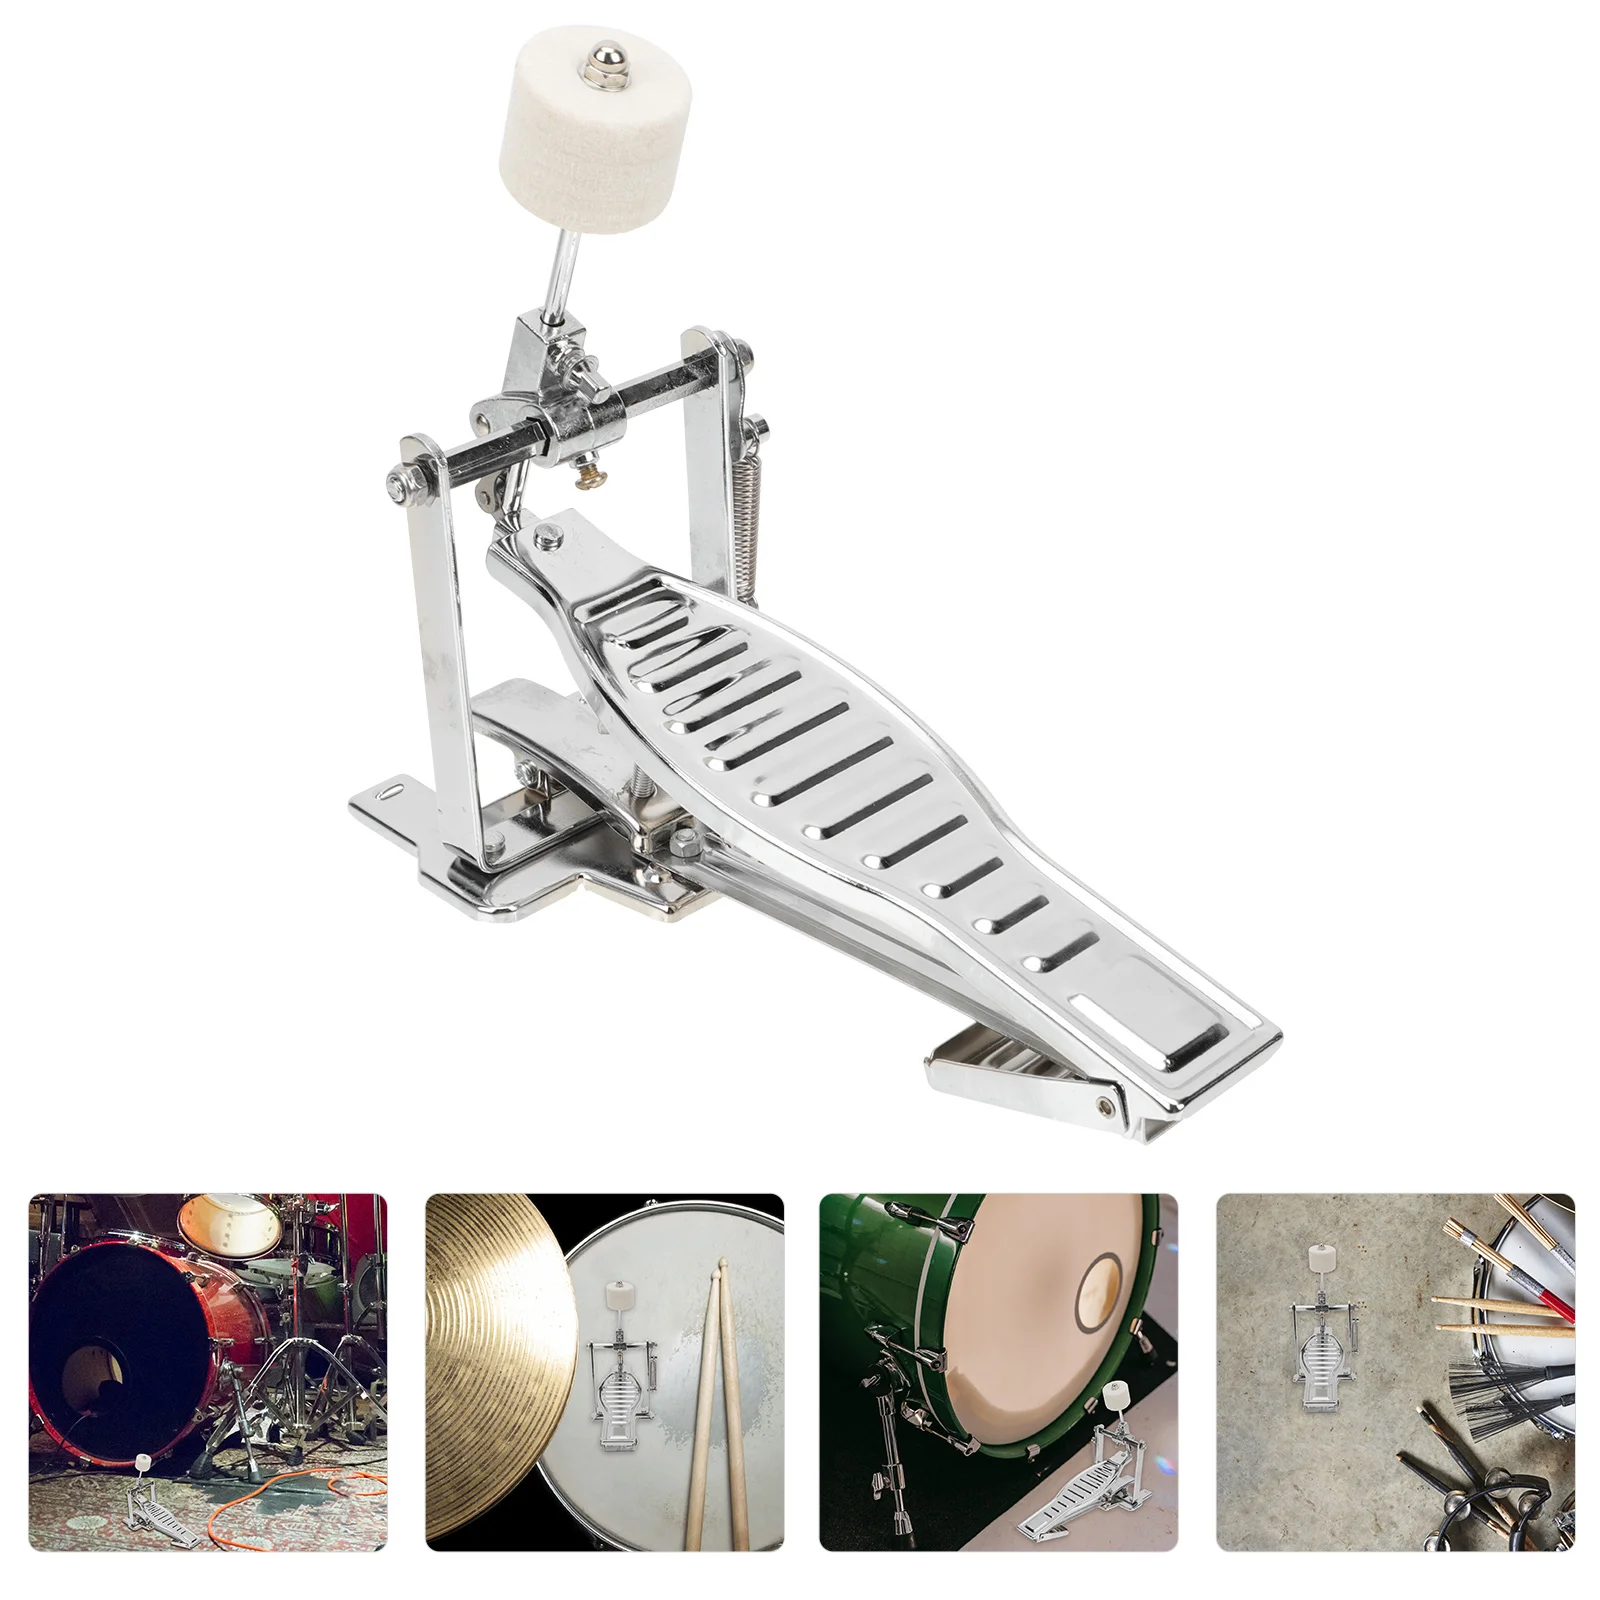 

Педаль для бас-барабана, двухцепная барабанная педаль, джазовая педаль, набор для барабана, педаль с одной педалью